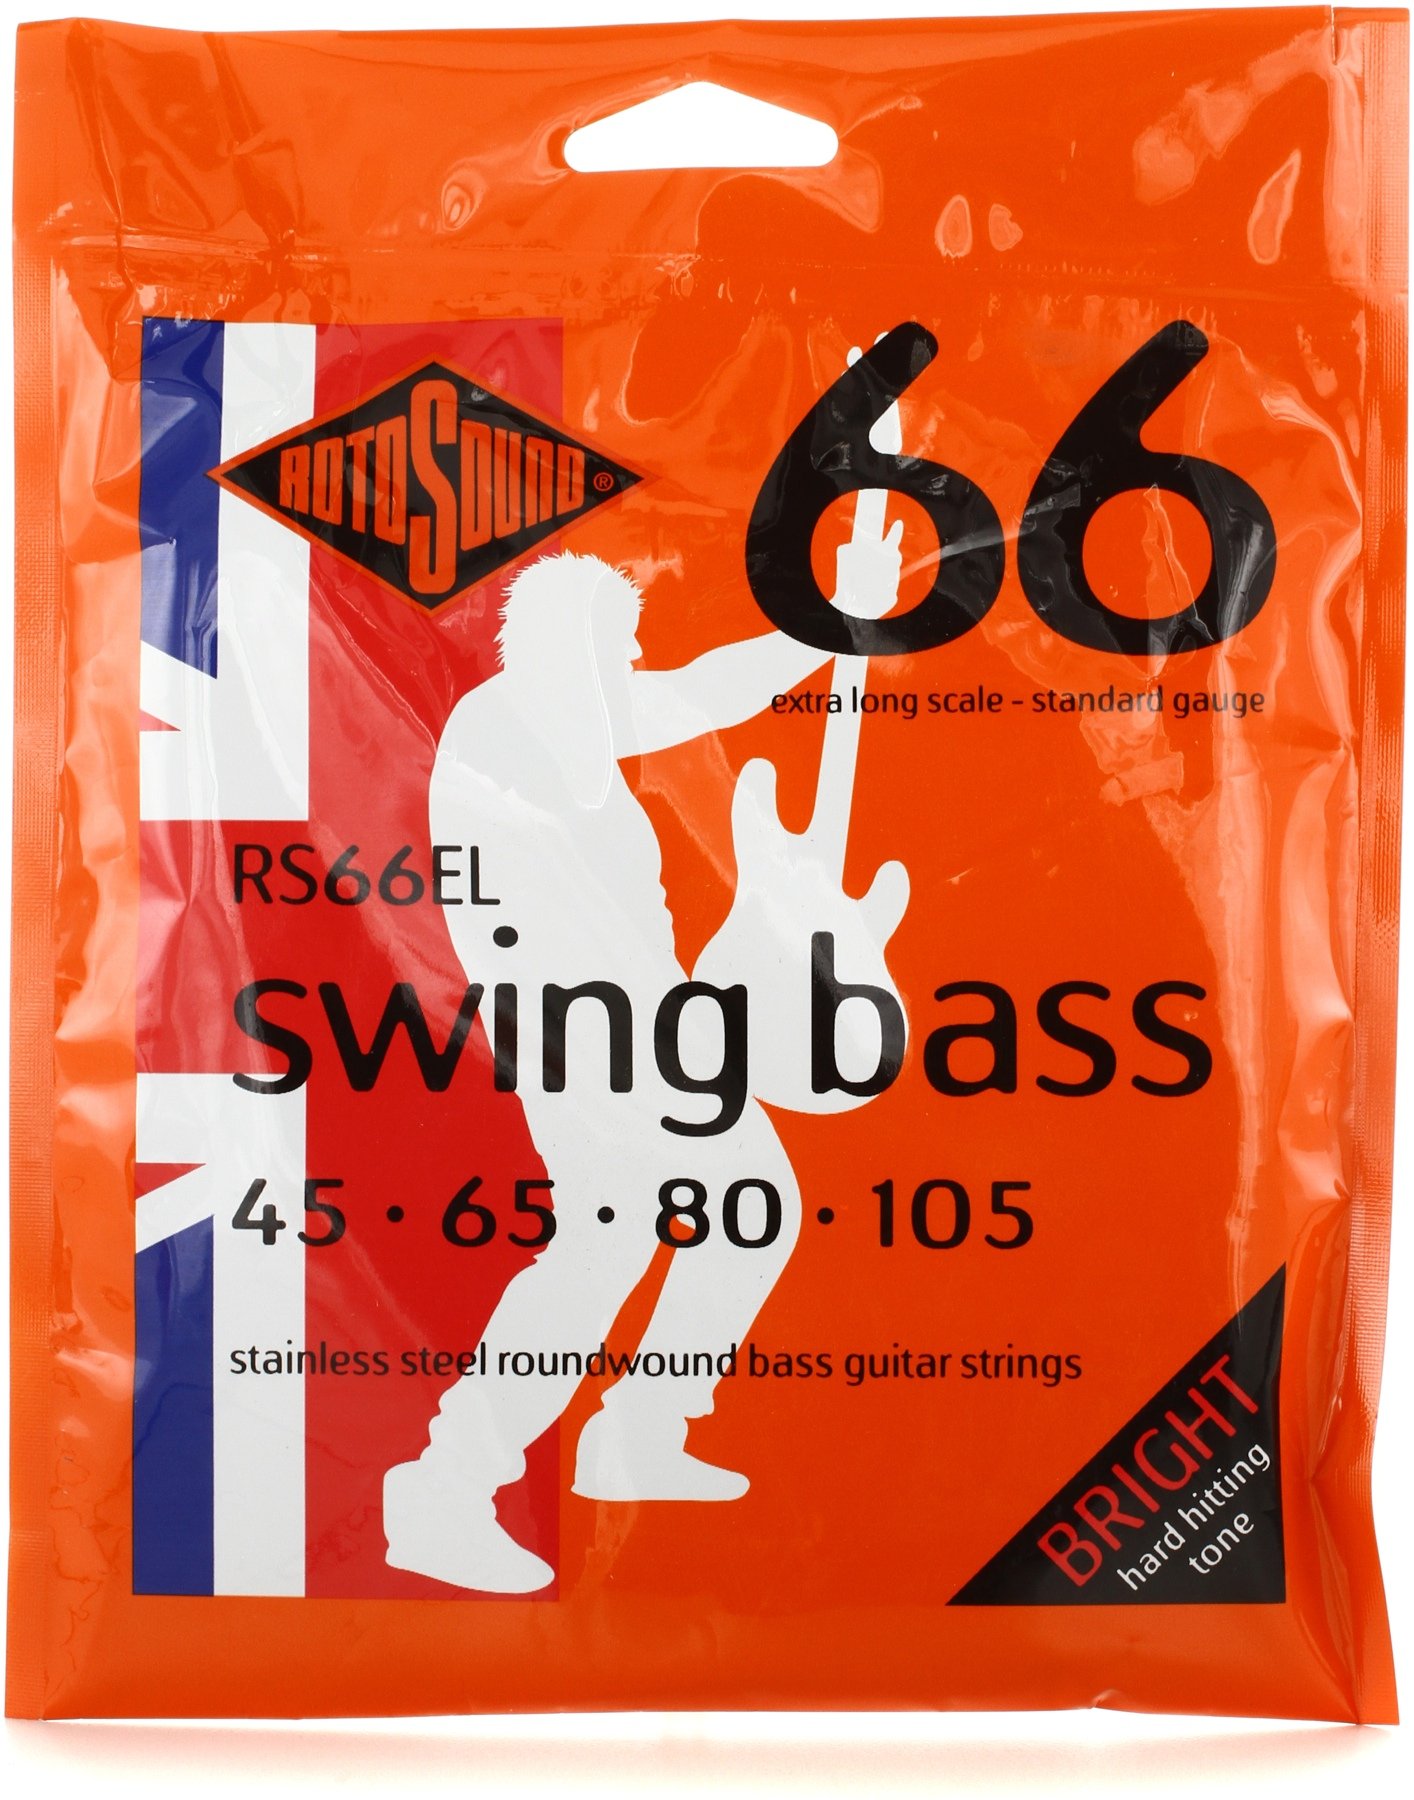 Stainless Steel 4er 40-95 Swing Bass 66 Rotosound Bass Saiten RS66LC